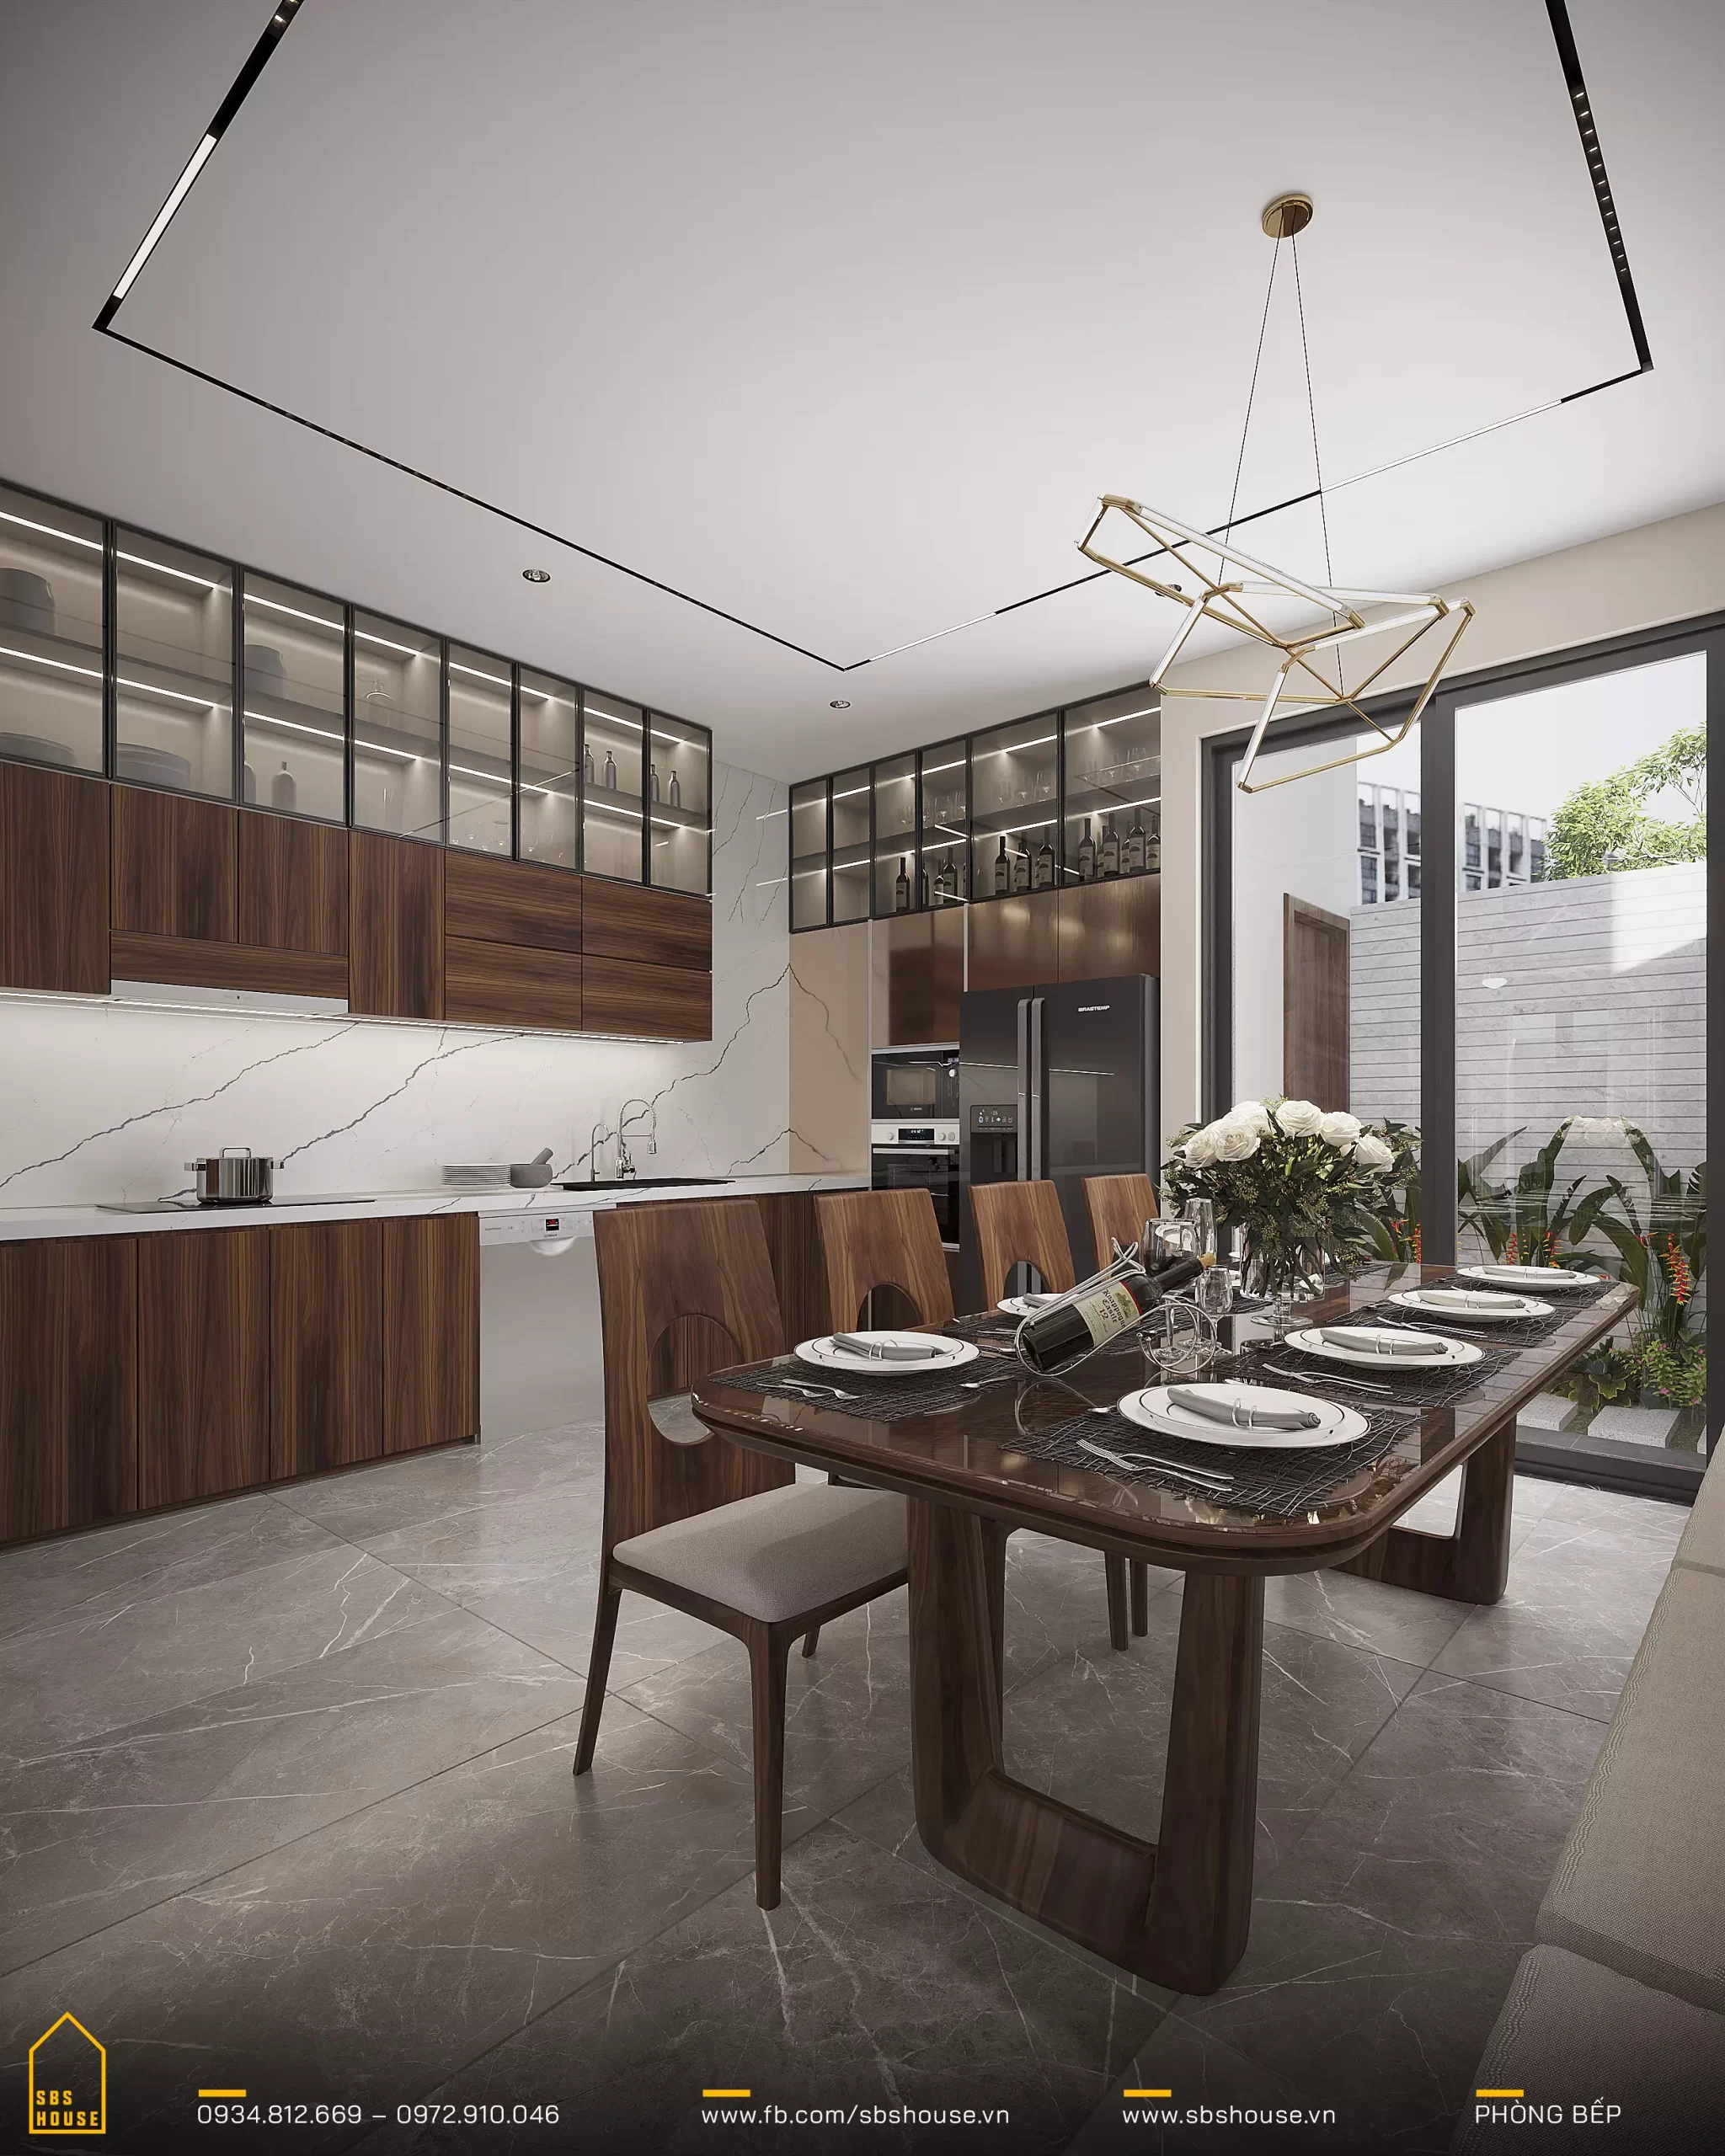 Phòng bếp ấn tượng với các thiết bị hiện đại, bàn ăn lớn và tông màu trắng tạo cảm giác thoải mái và sáng sủa. 